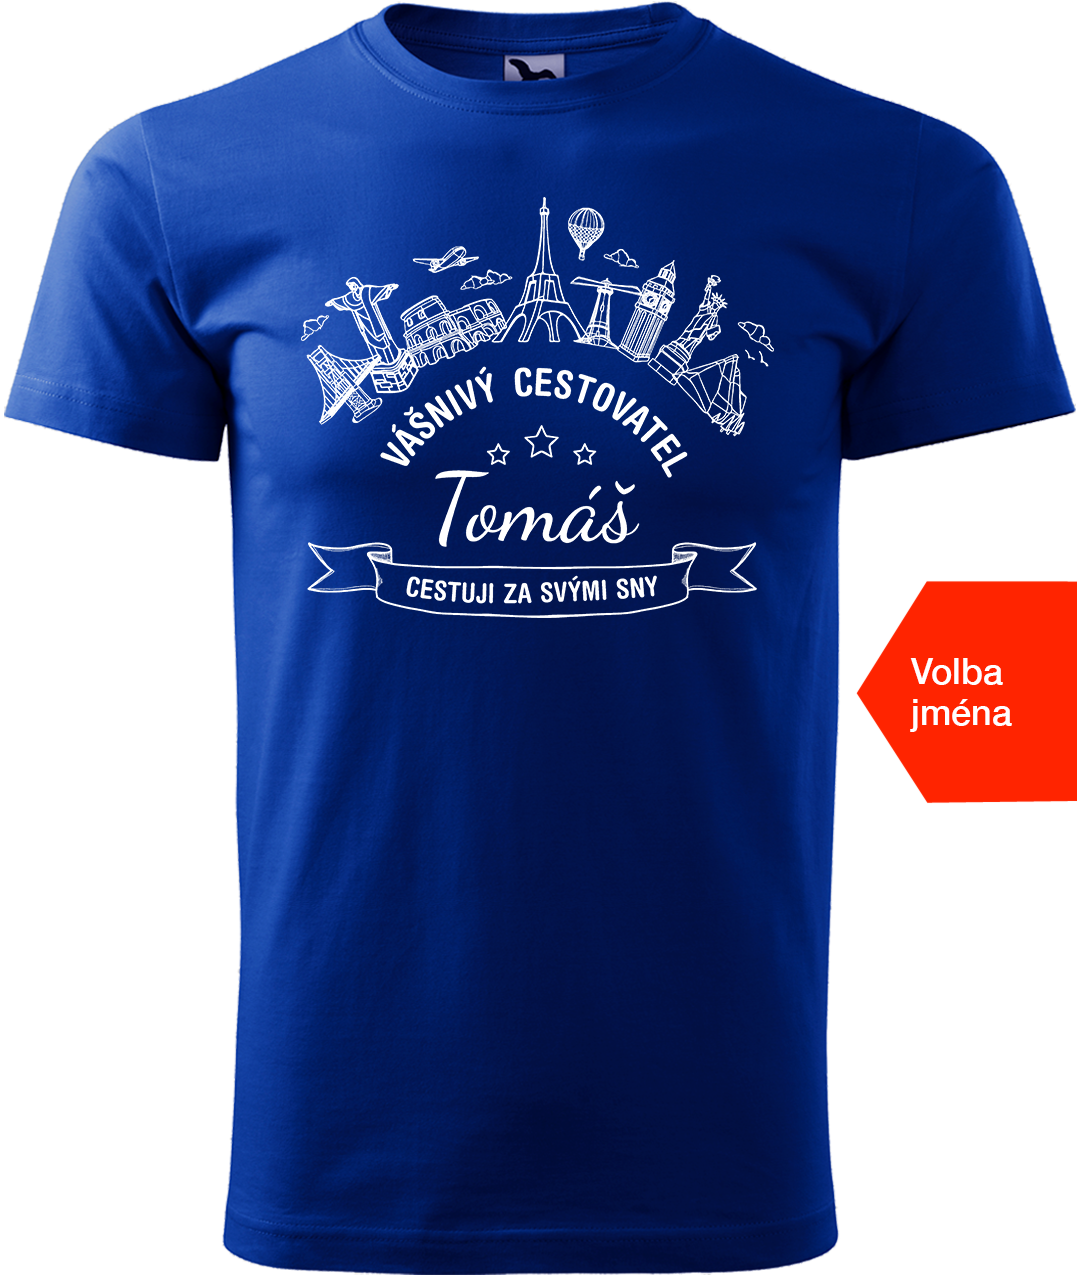 Pánské cestovatelské tričko se jménem - Vášnivý cestovatel Velikost: L, Barva: Královská modrá (05)